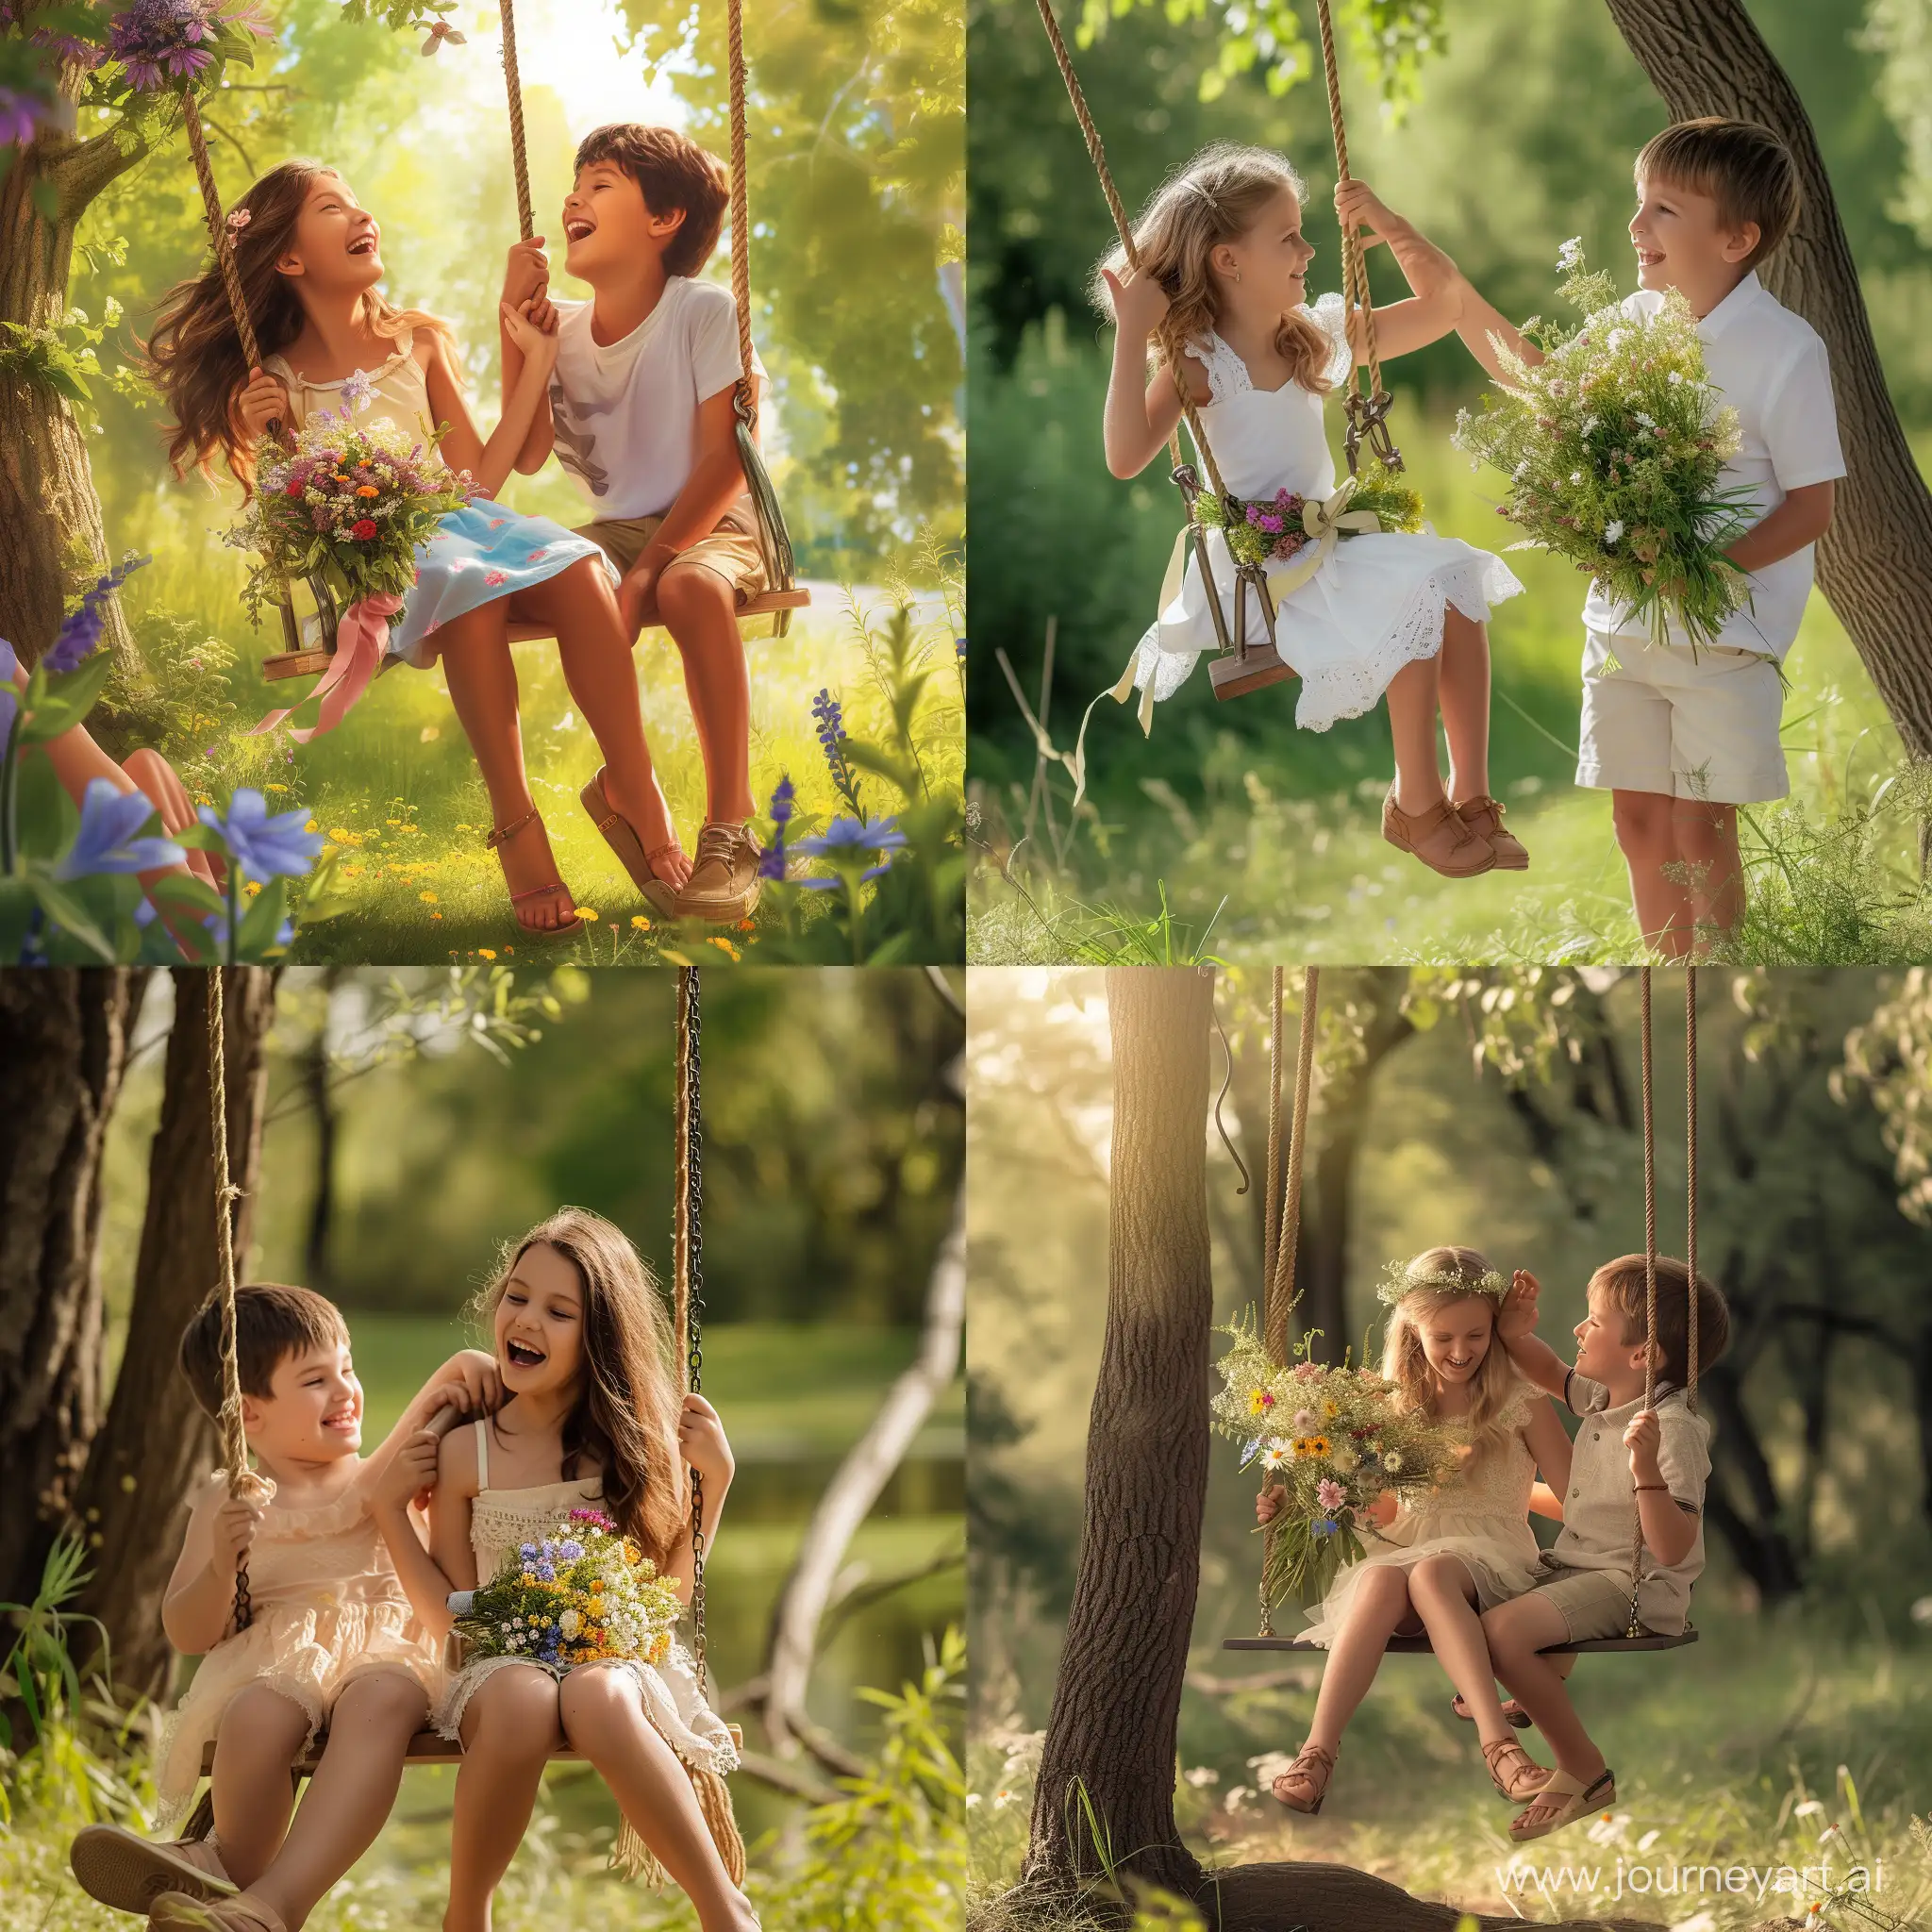 Мальчик качает девочку на качелях в летнем парке, девочка ,сидящая на качелях, держит букет полевых цветов, дети разговаривают и смеются, солнечный летний день, фотография, гиперреализм, высокое разрешение